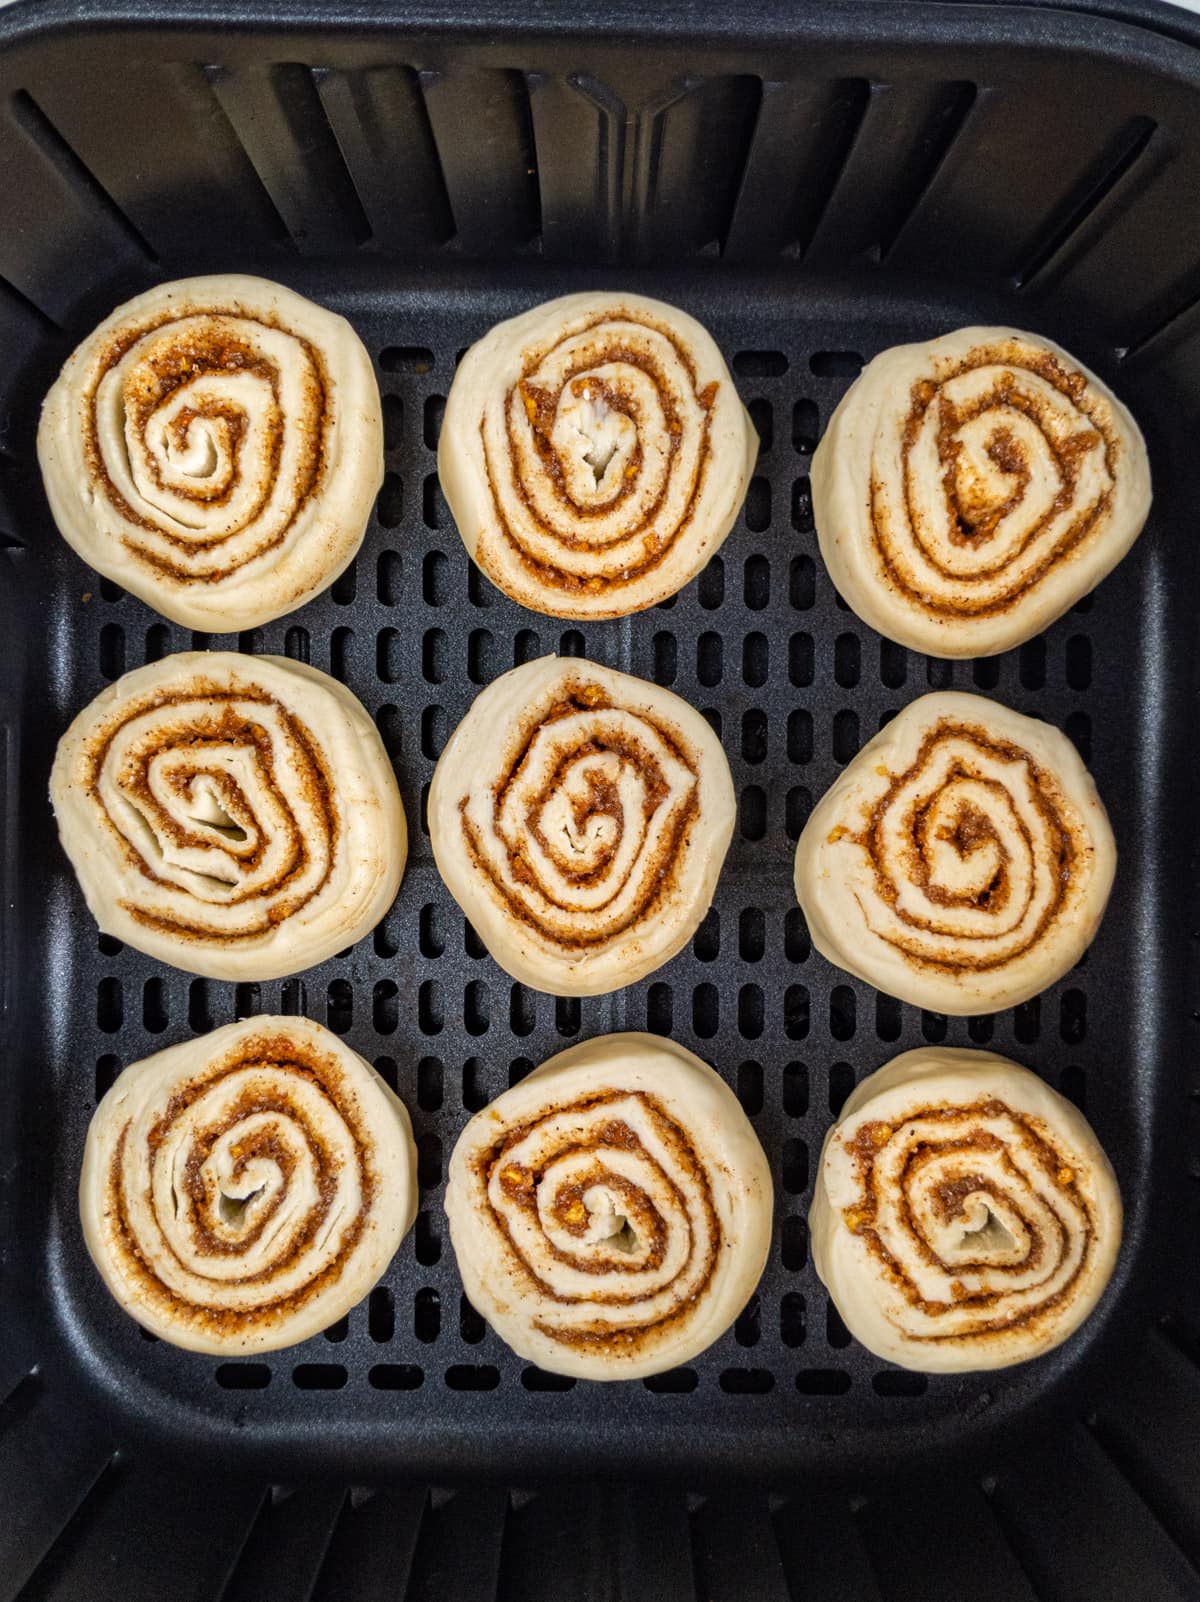 Top view of 9 cinnamon rolls in an air fryer basket.